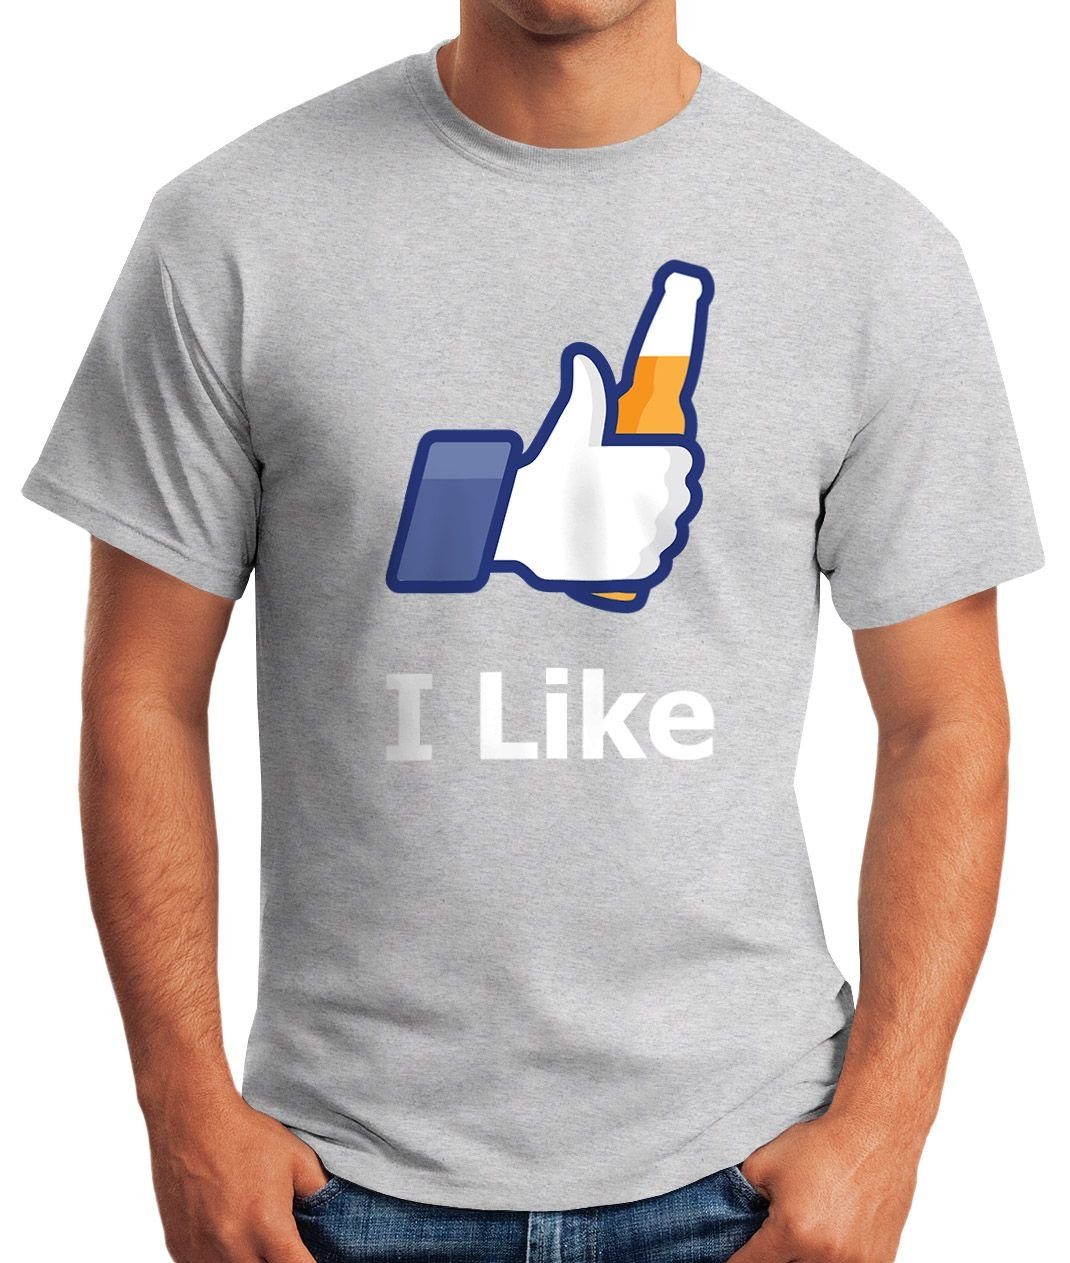 T-Shirt like mit Moonworks® I beer Herren Bier Print-Shirt grau Fun-Shirt MoonWorks Print